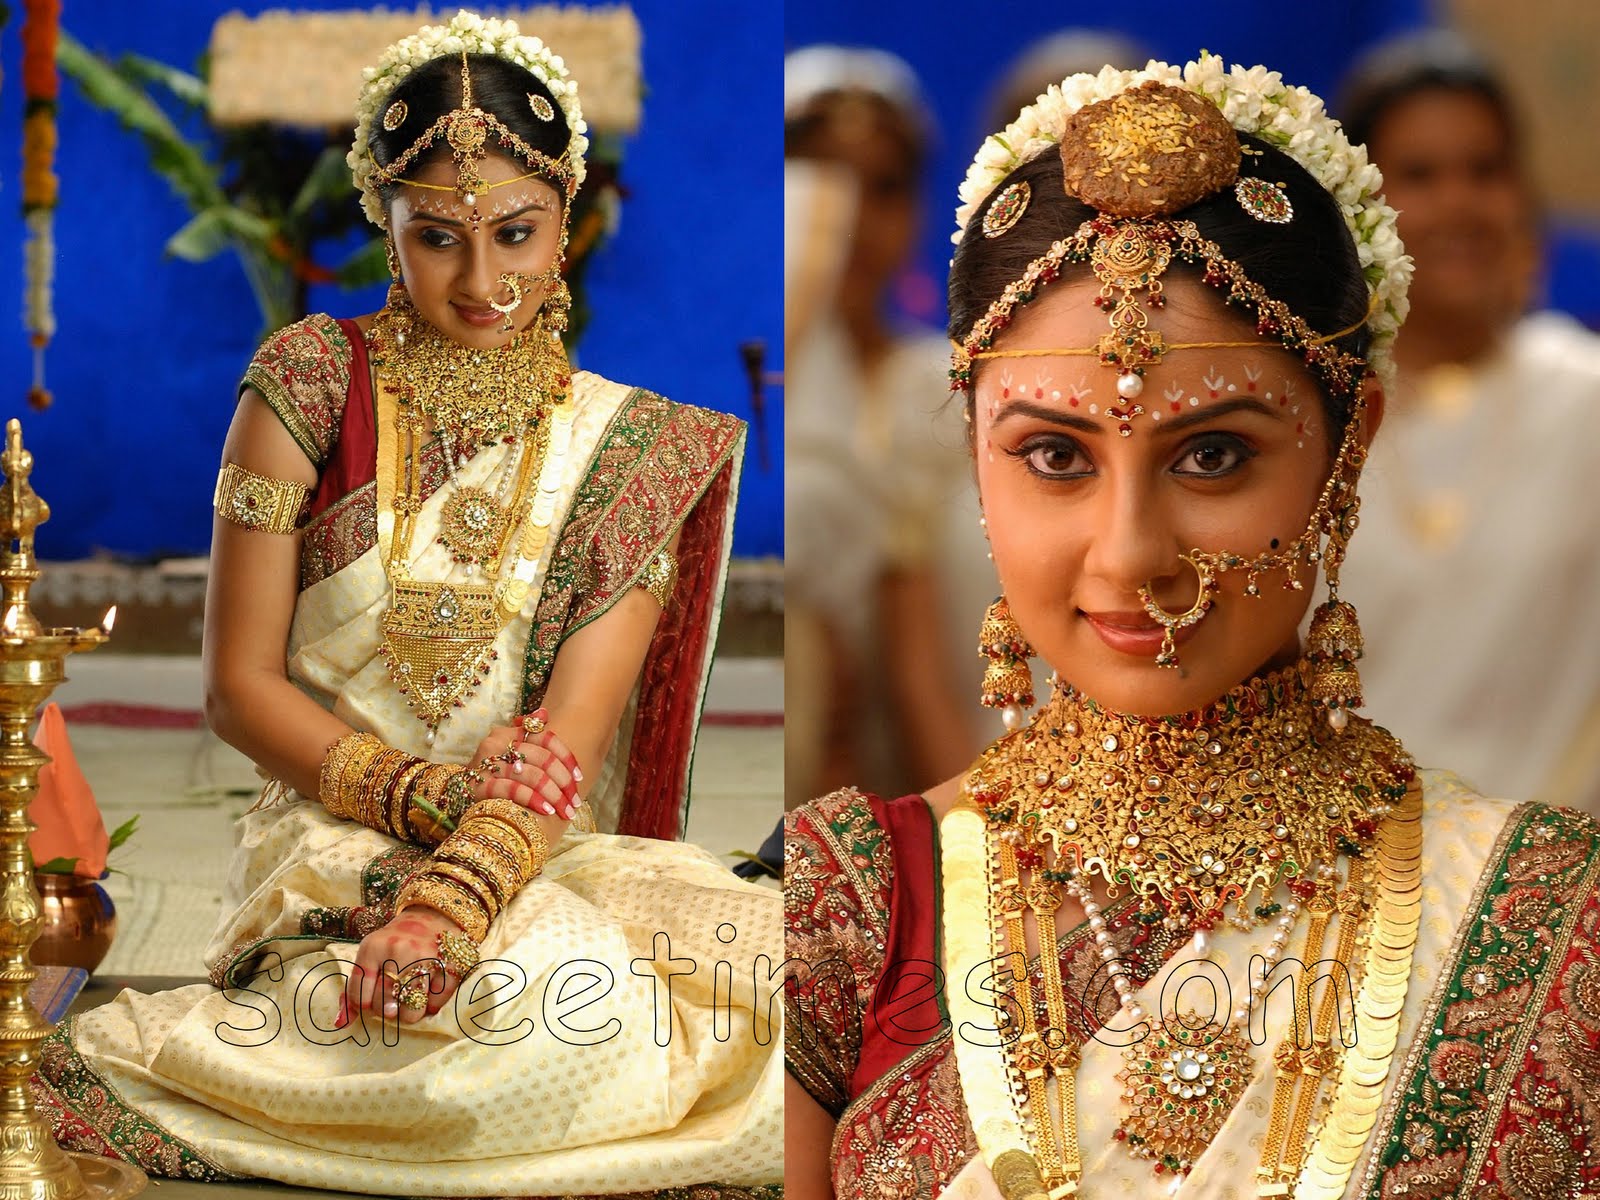 http://1.bp.blogspot.com/-1AQHL8mhgm0/TaW9rXsAOBI/AAAAAAAAAC0/bH6-Iw3CxwI/s1600/Bhanu-Shree-Mehra-Indian-Wedding-Saree.jpg